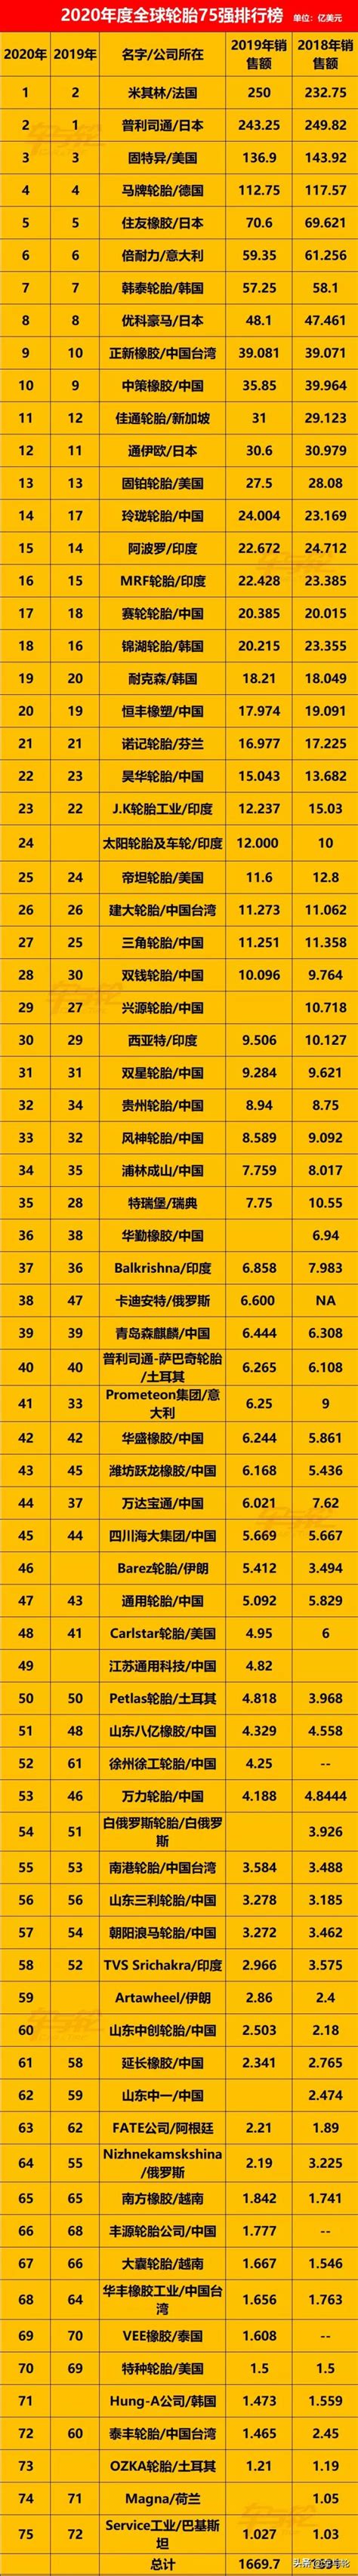 中国轮胎排行榜_中国国产汽车轮胎品牌排行榜(2)_中国排行网